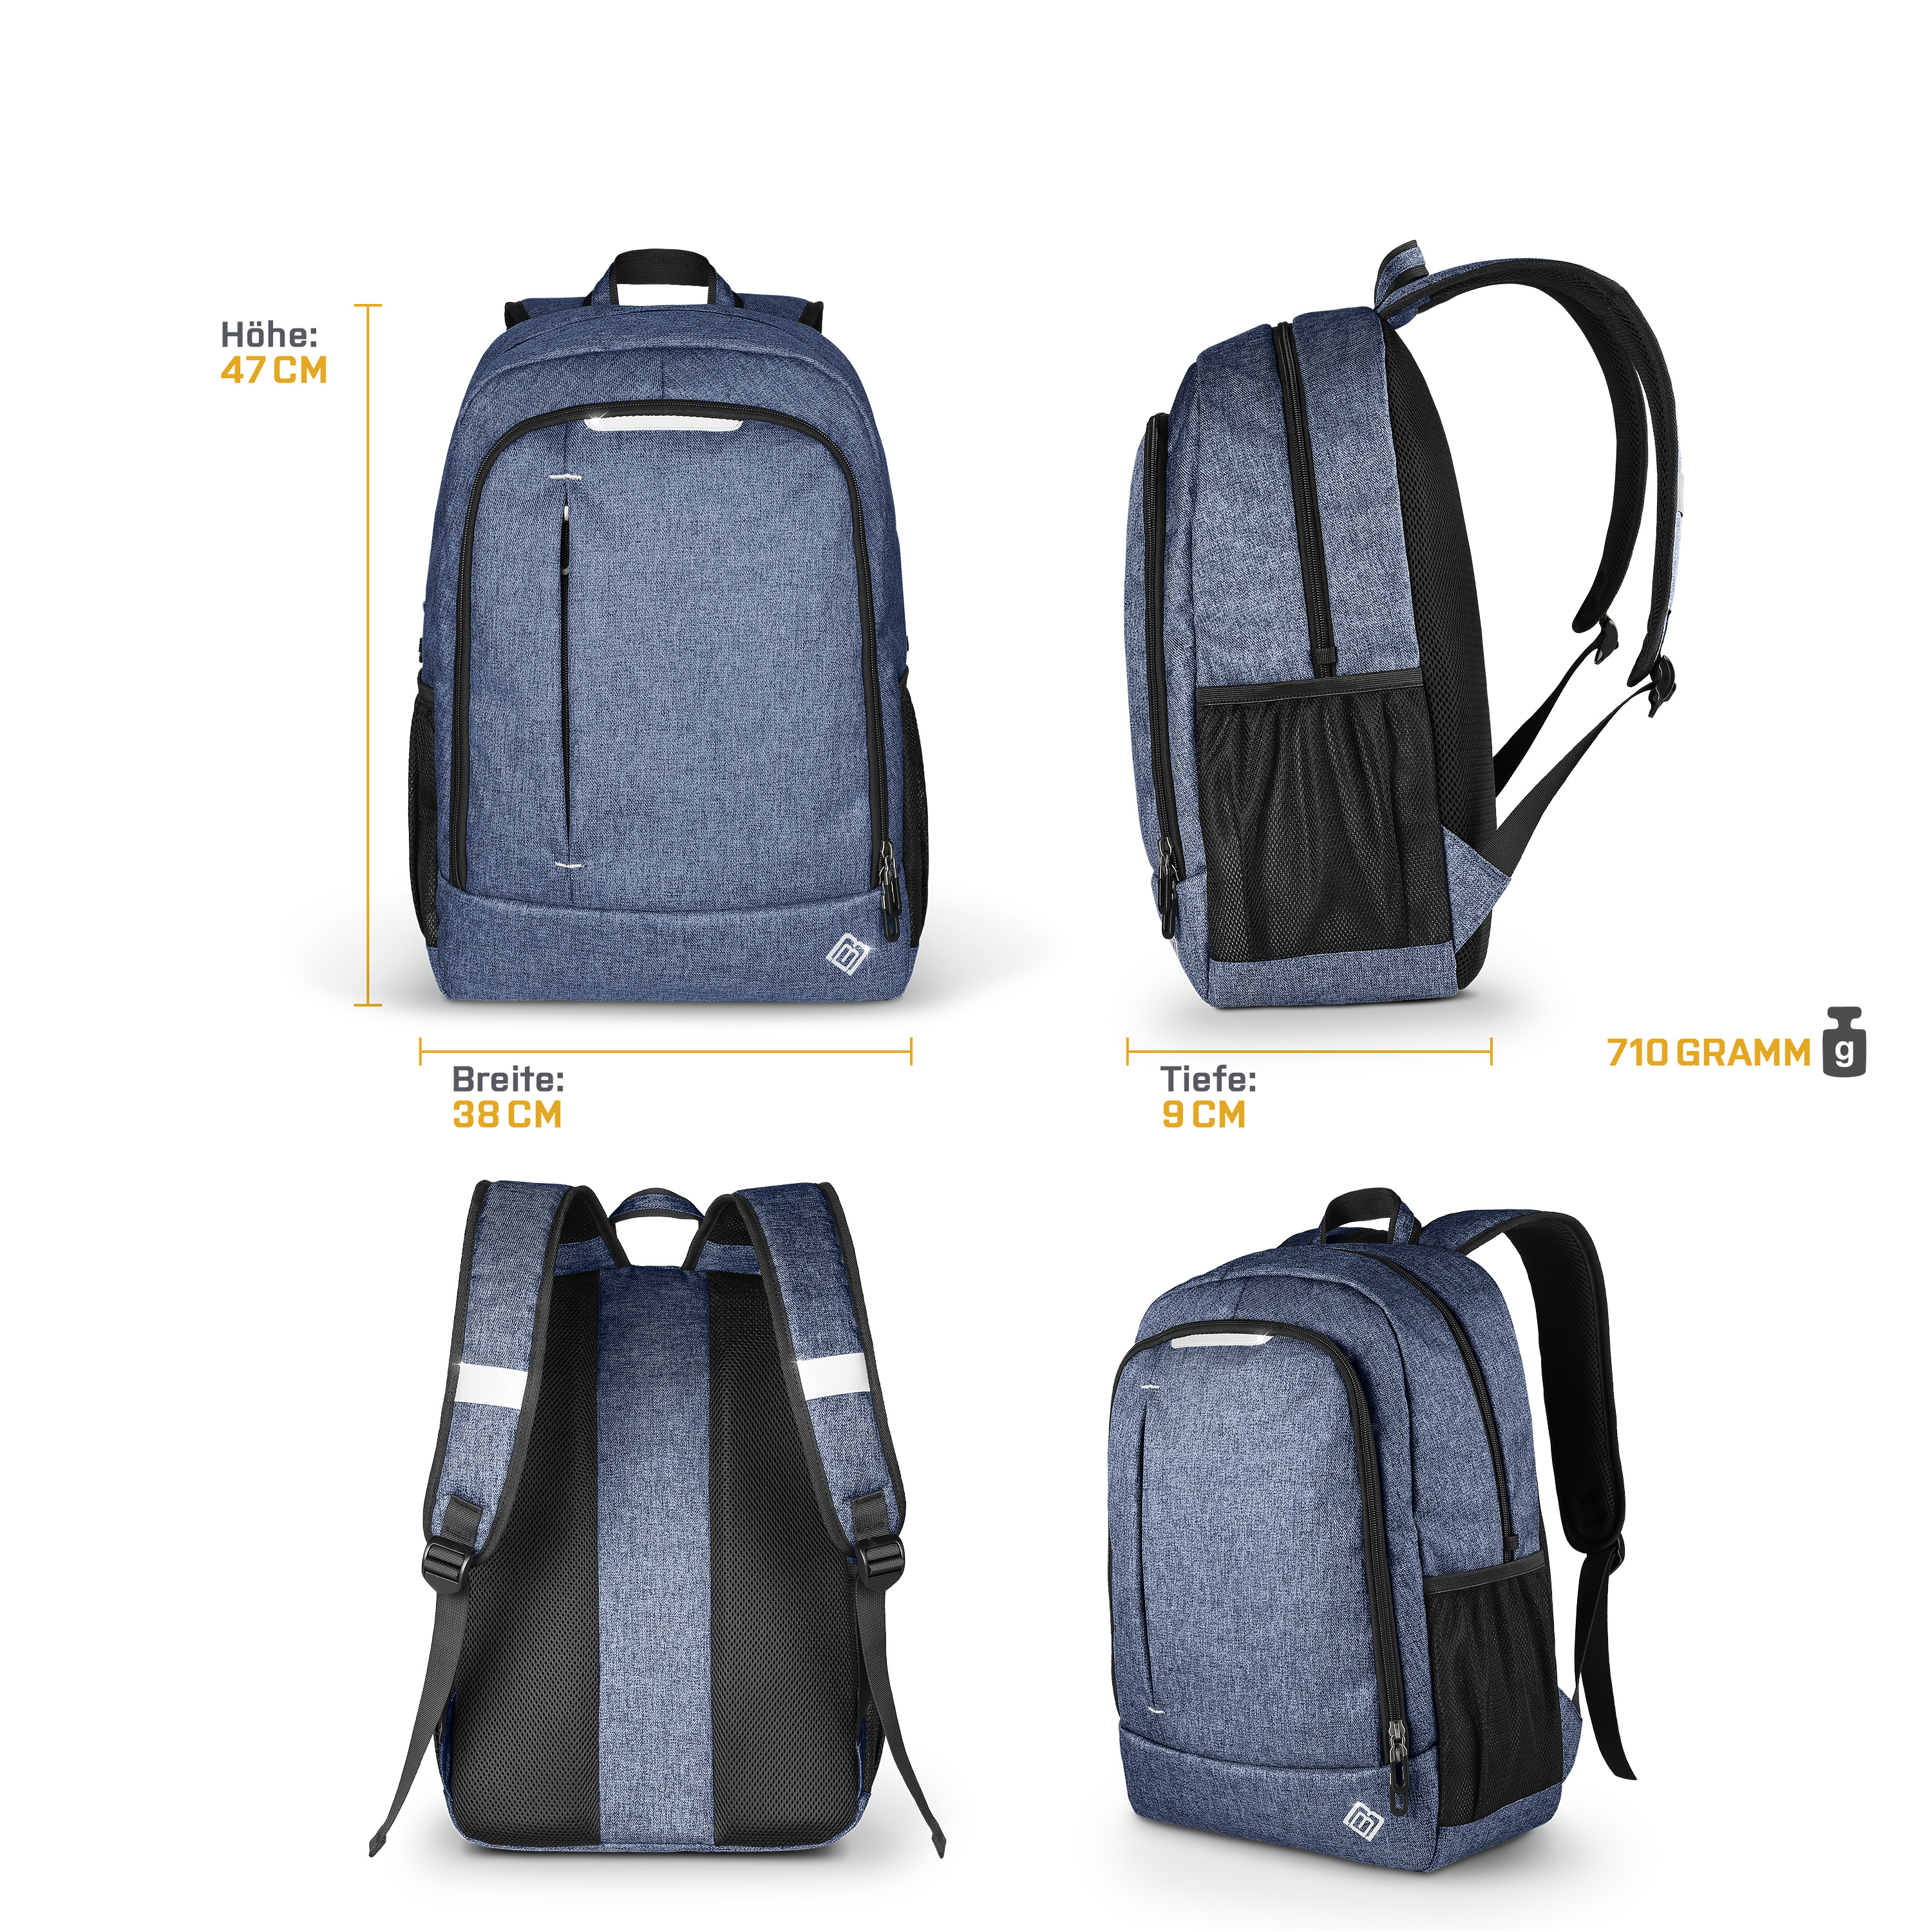 BOOSTBOXX BoostBag One Textil/Stoff, blau Universal Notebook-Rucksack Rucksack blau für